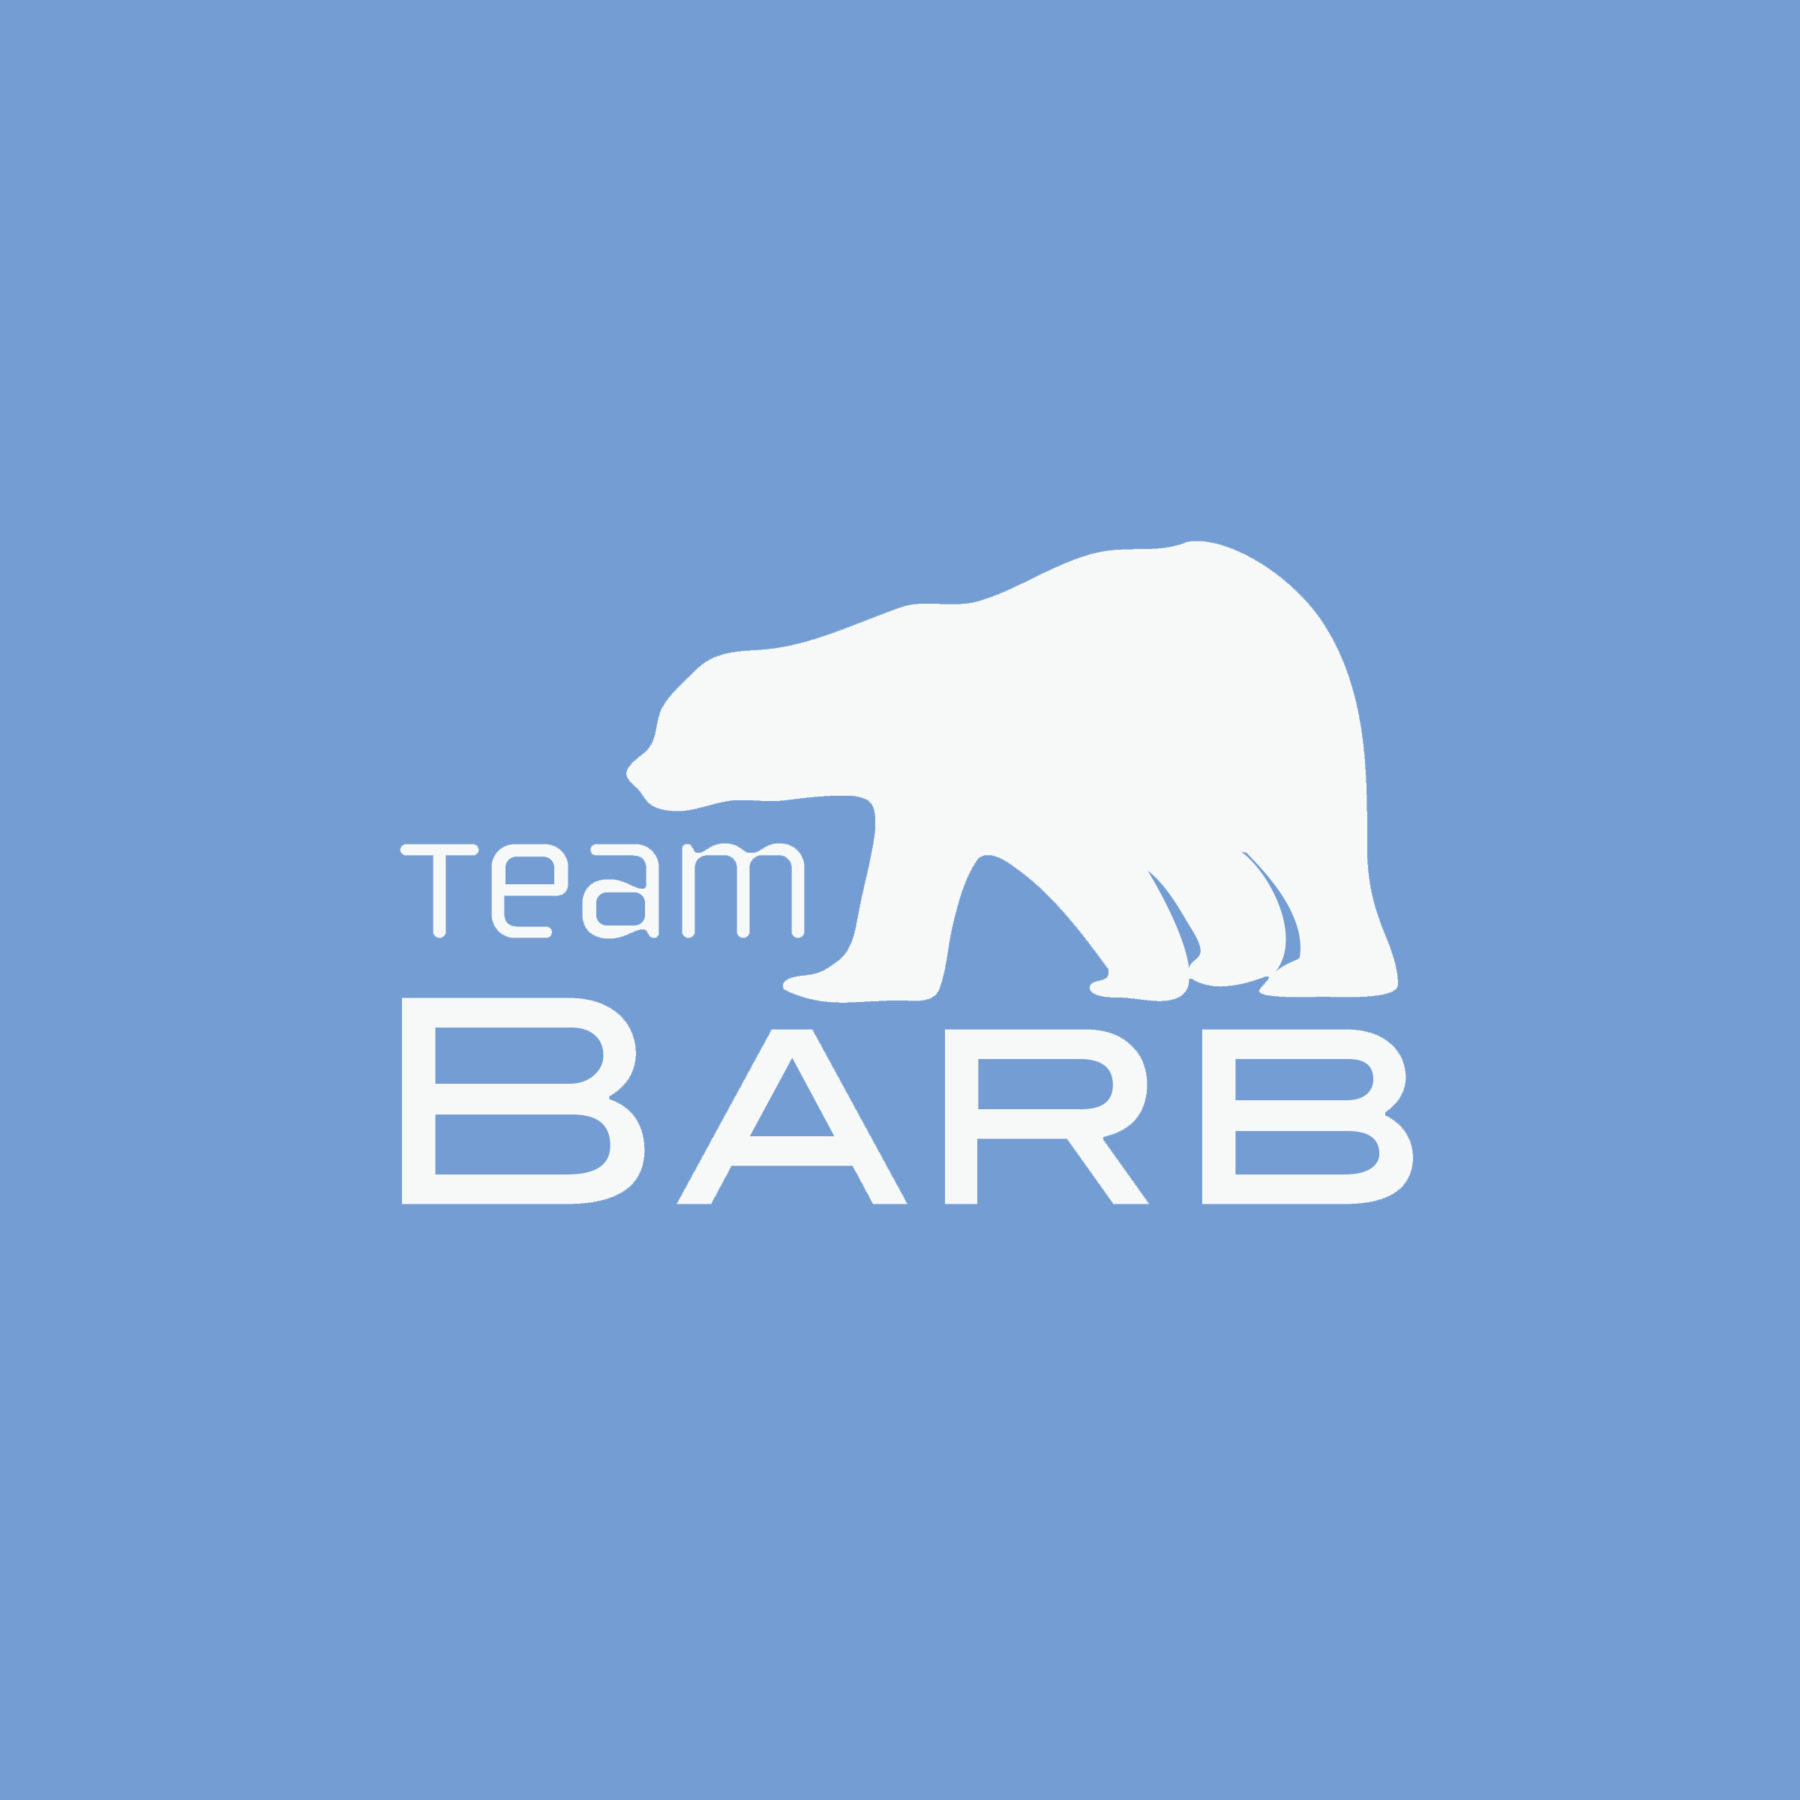 Team Barb Logo